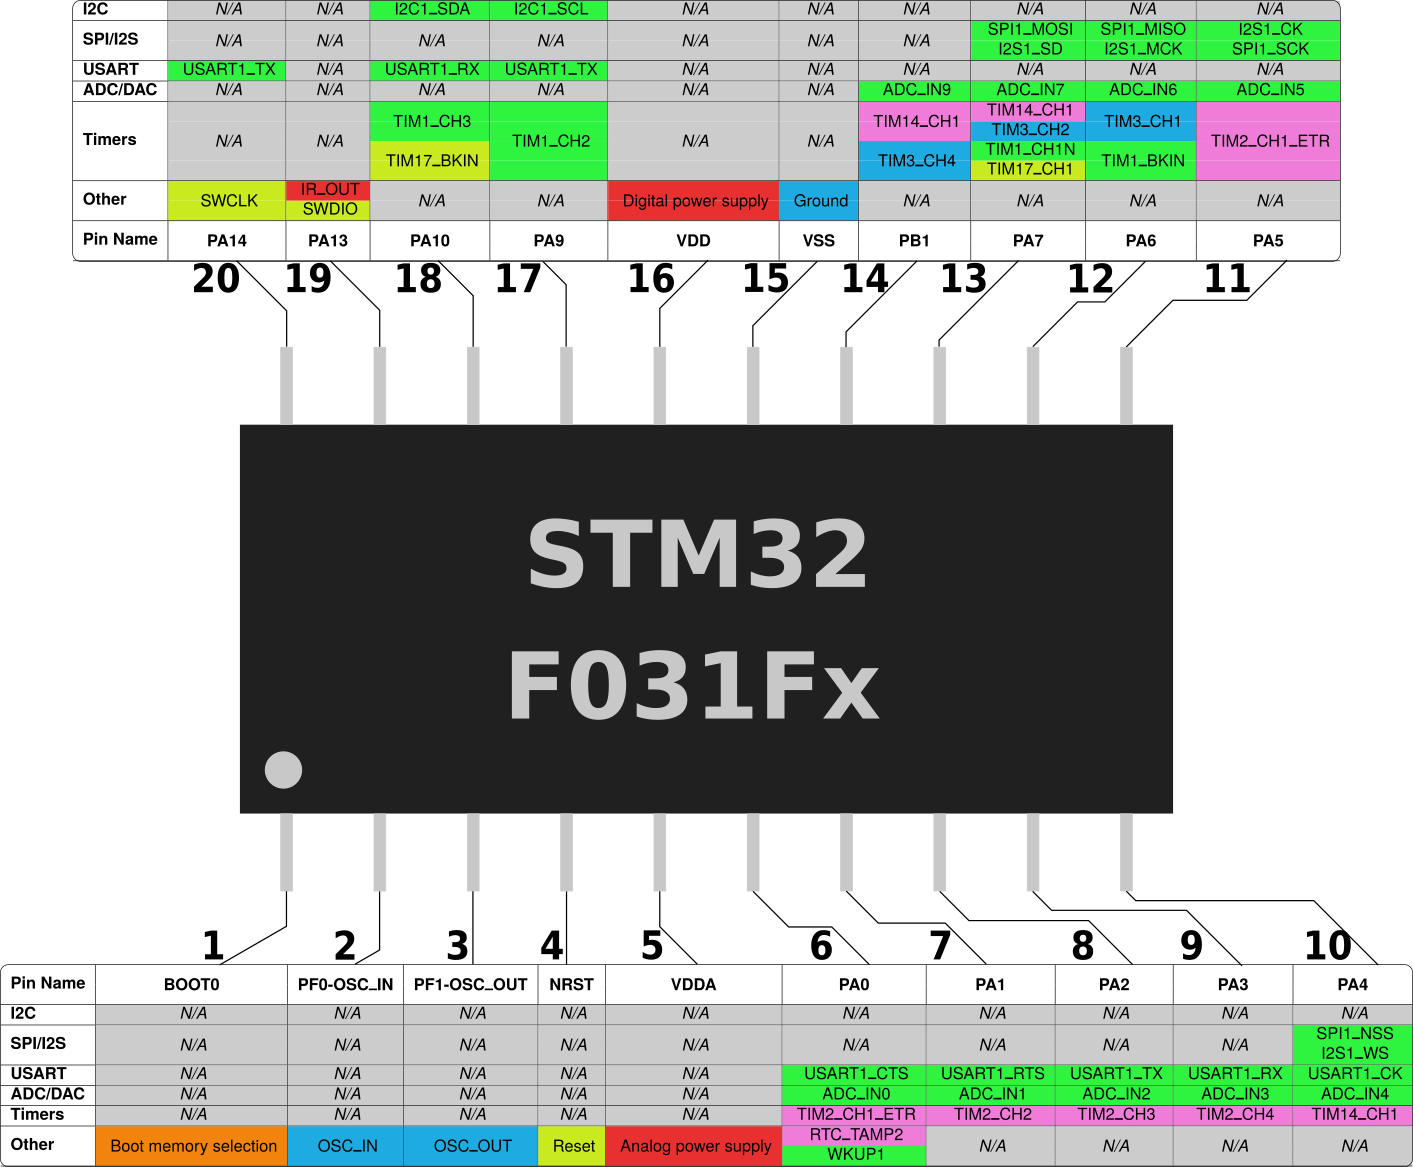 STM32F031Fx